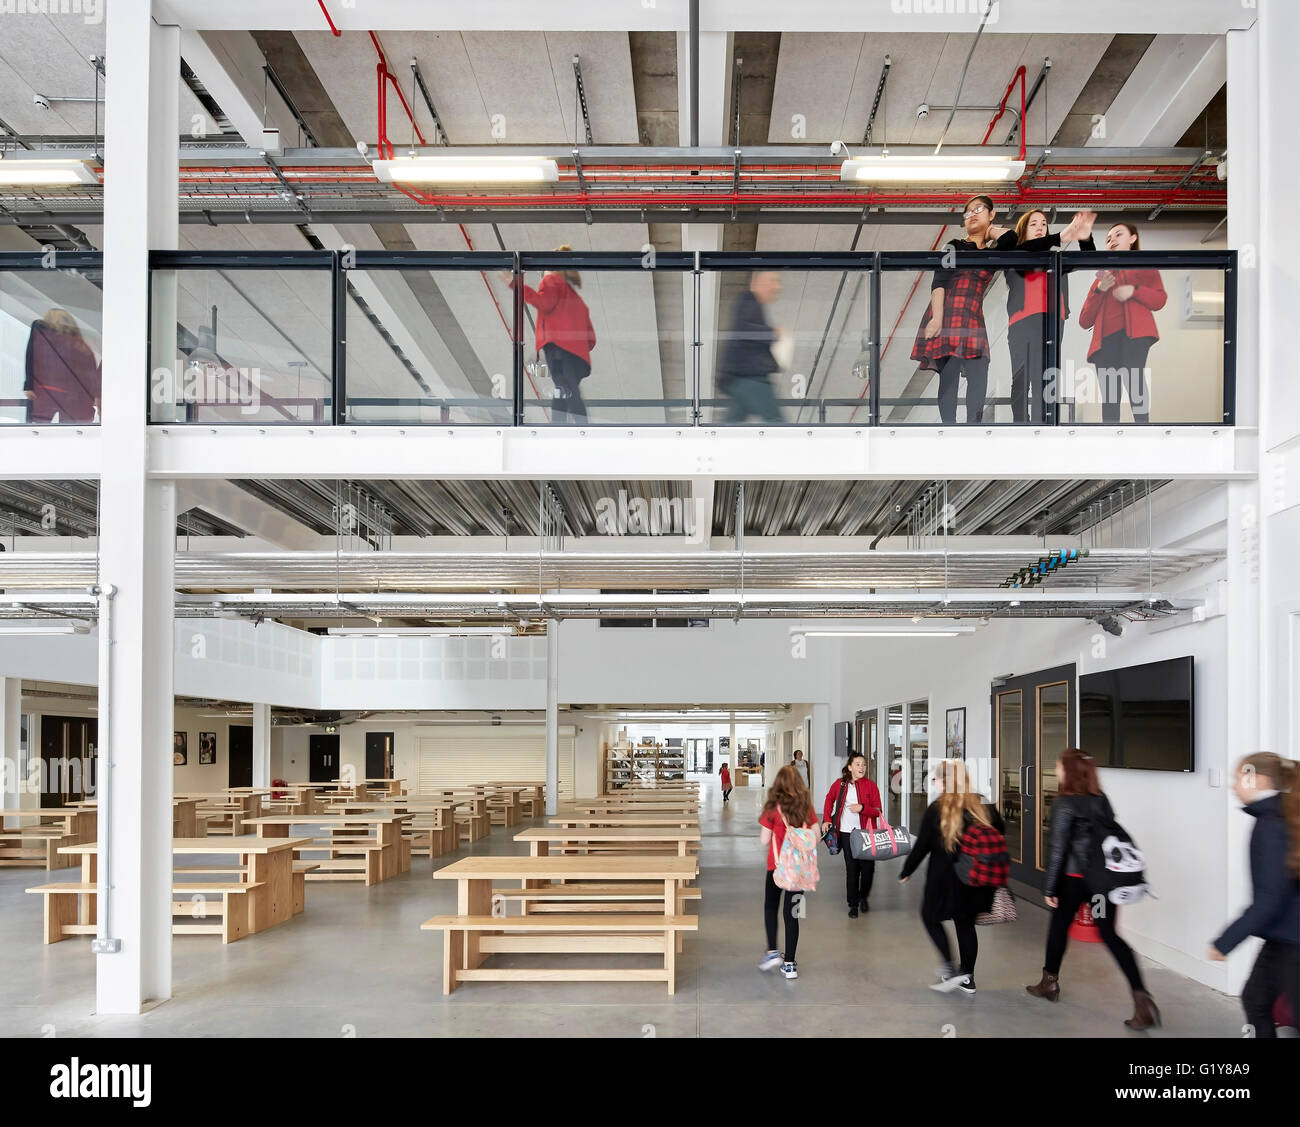 Erdgeschoss Eingang Bereich und im ersten Stock Galerie. Plymouth Creative School of Art, Plymouth, Vereinigtes Königreich. Architekt: Feilden Clegg Bradley Studios LLP, 2015. Stockfoto